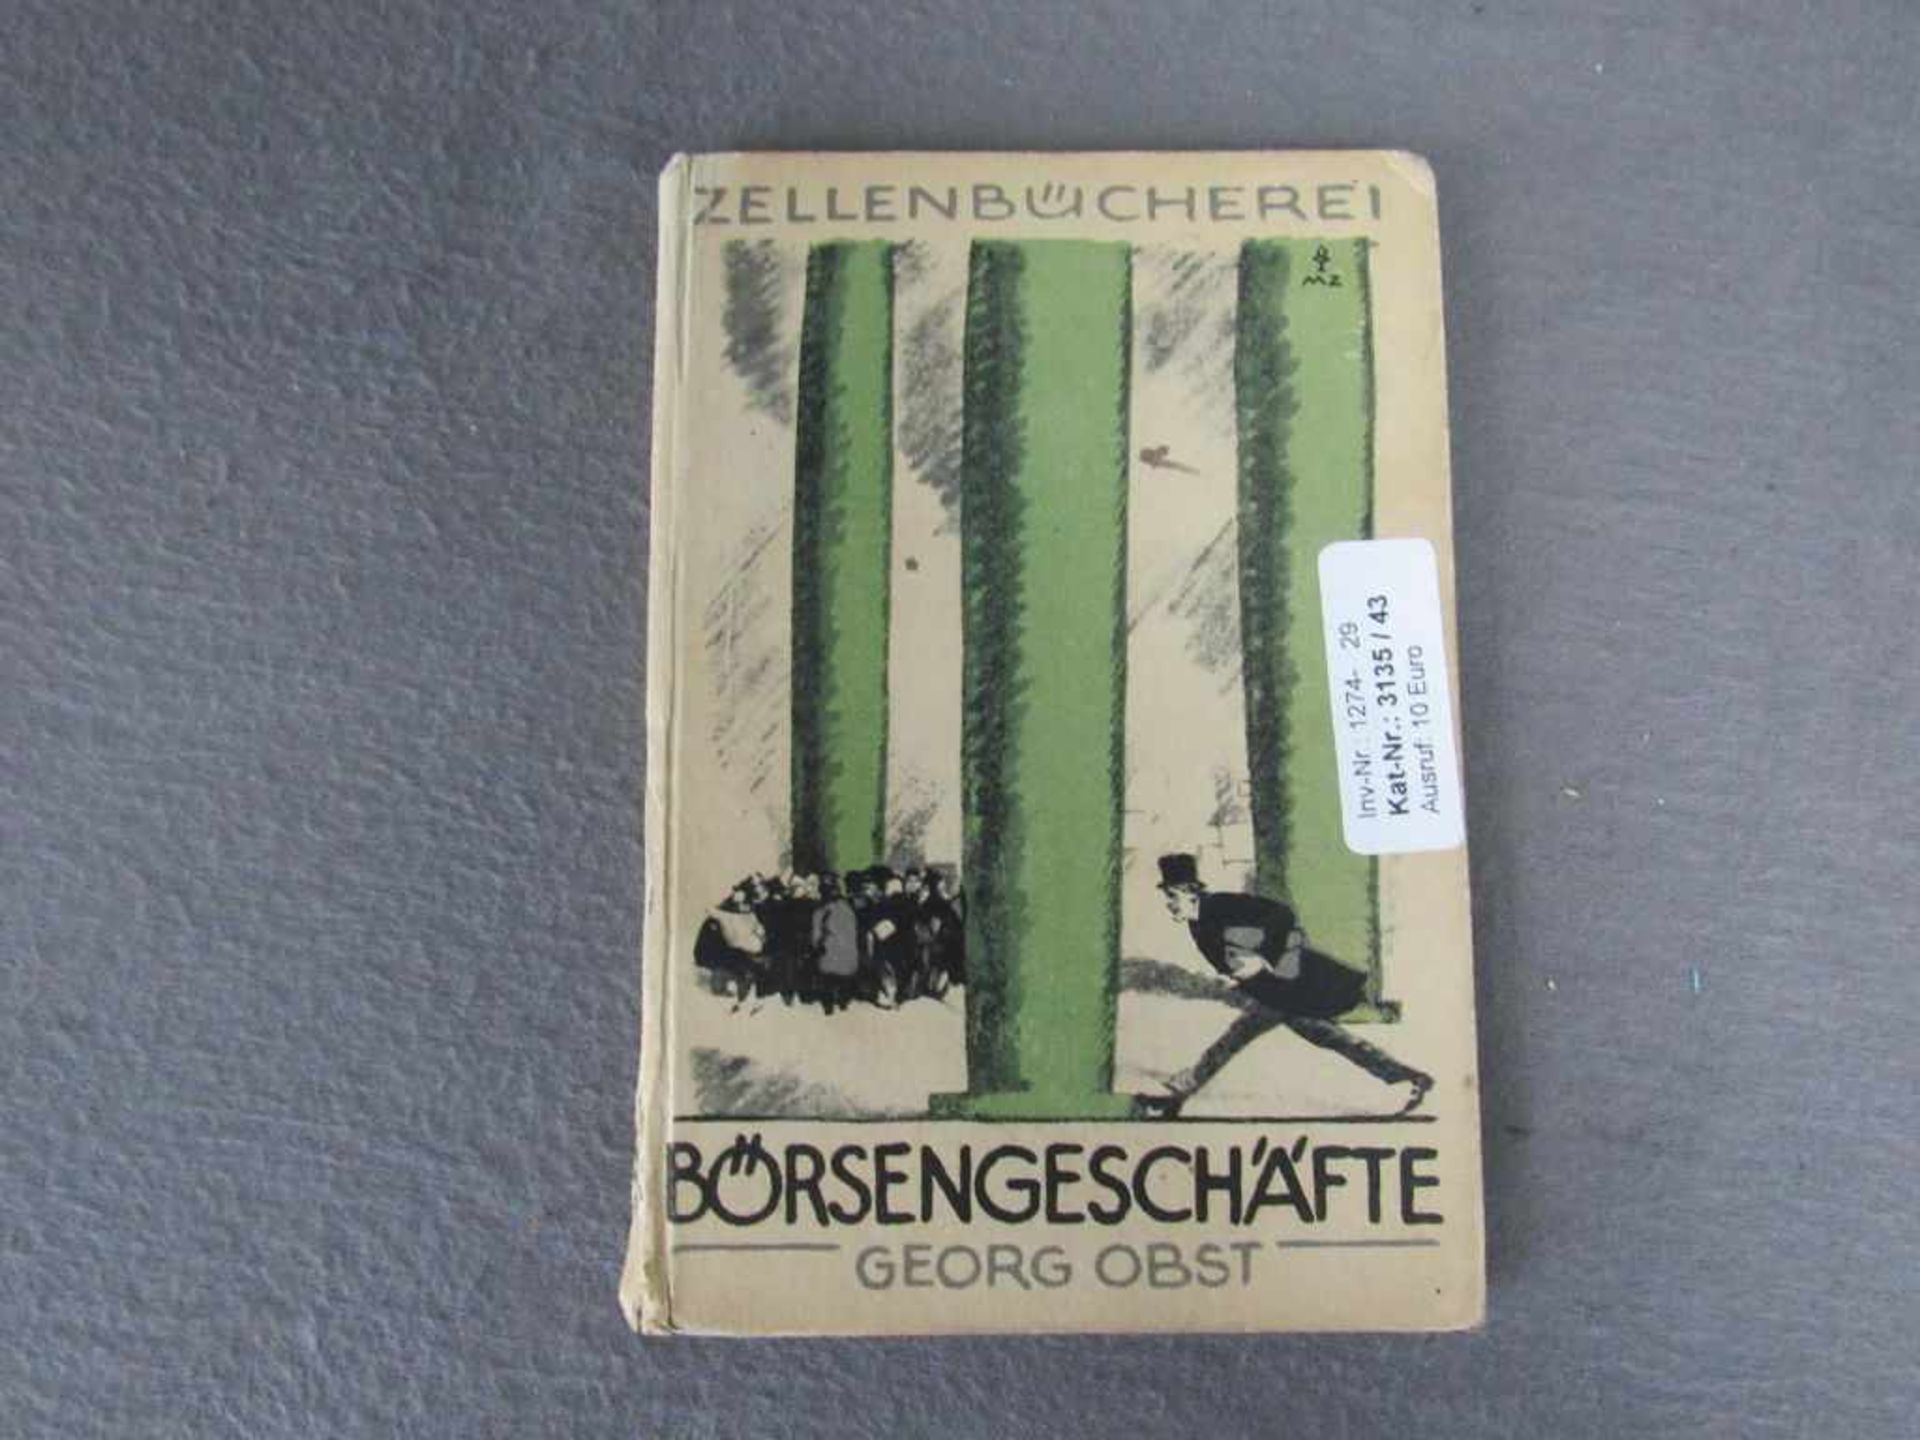 Börsengeschäfte von Georg Obst von 1922